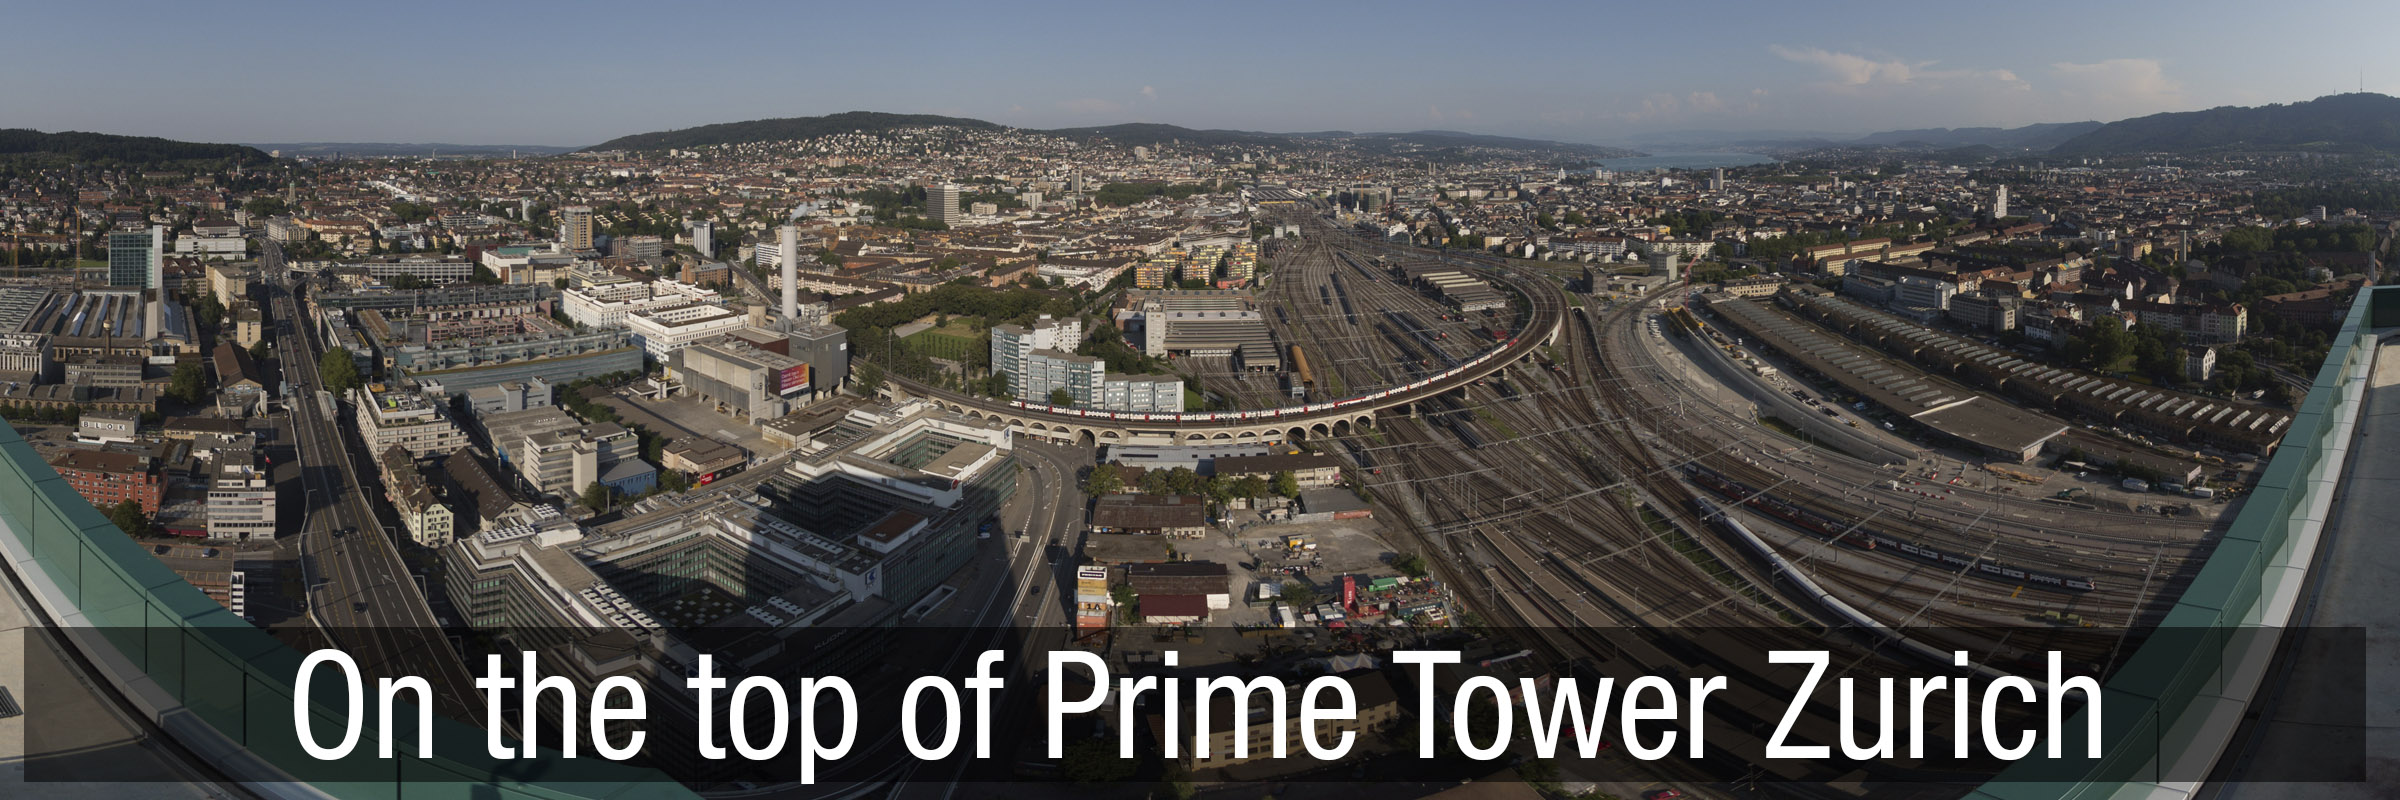 Prime Tower Zurich